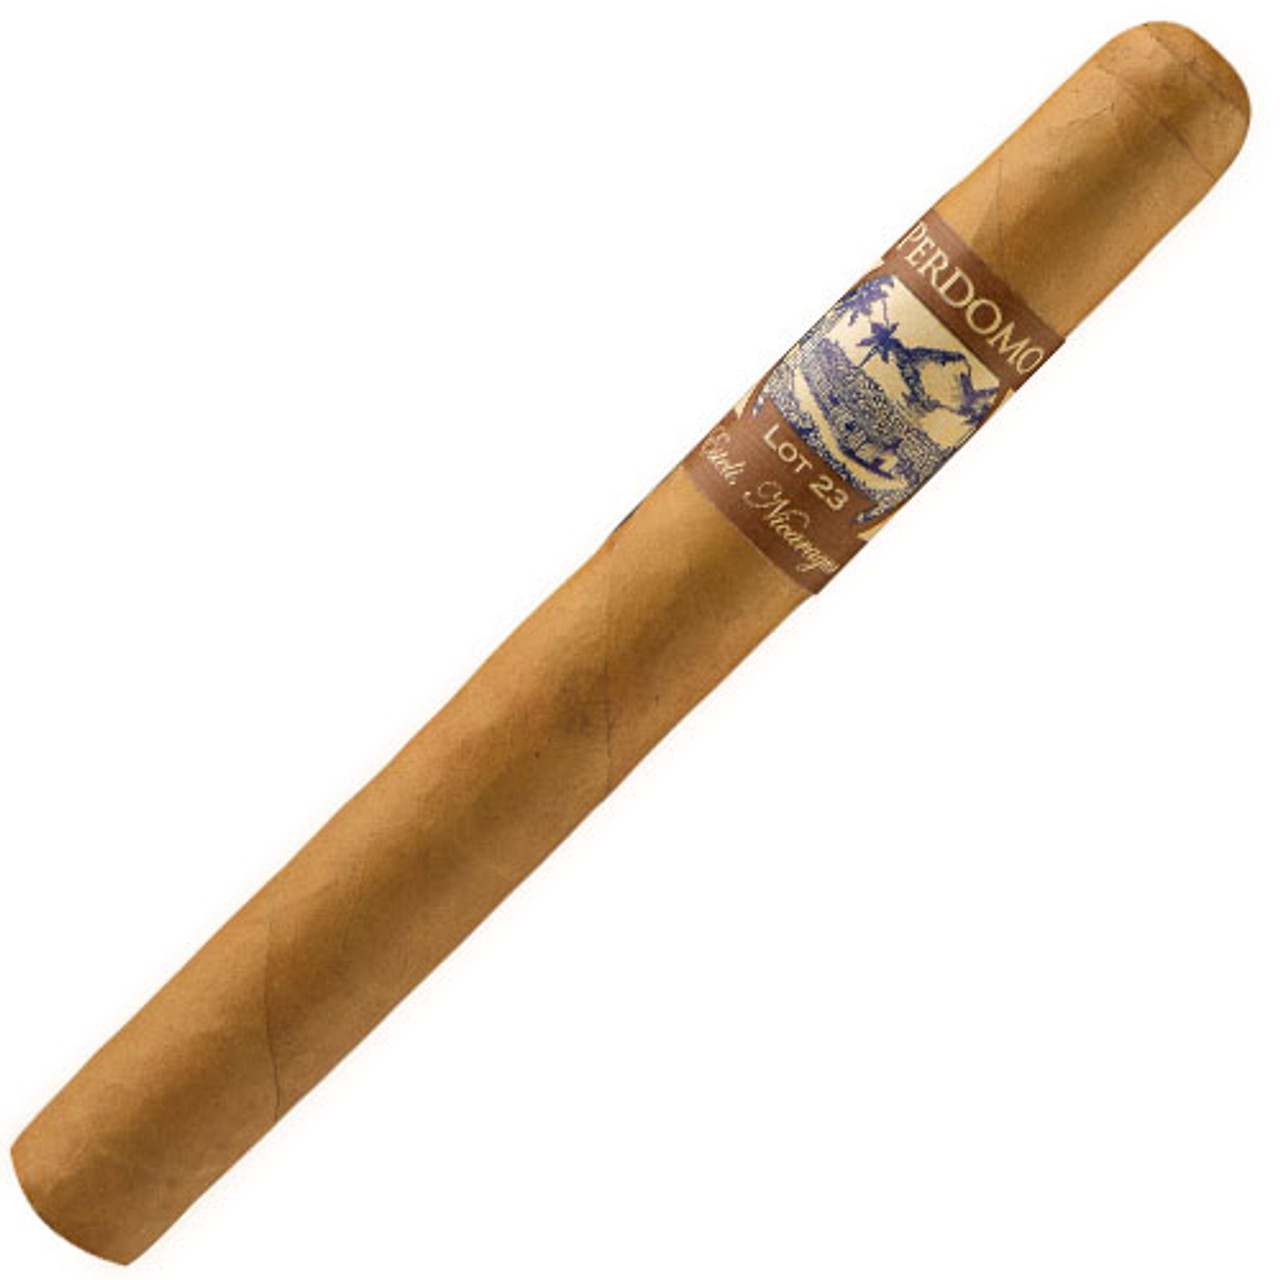 Perdomo Lot 23 Churchill Natural Cigars - 7 x 50 (Box of 24)